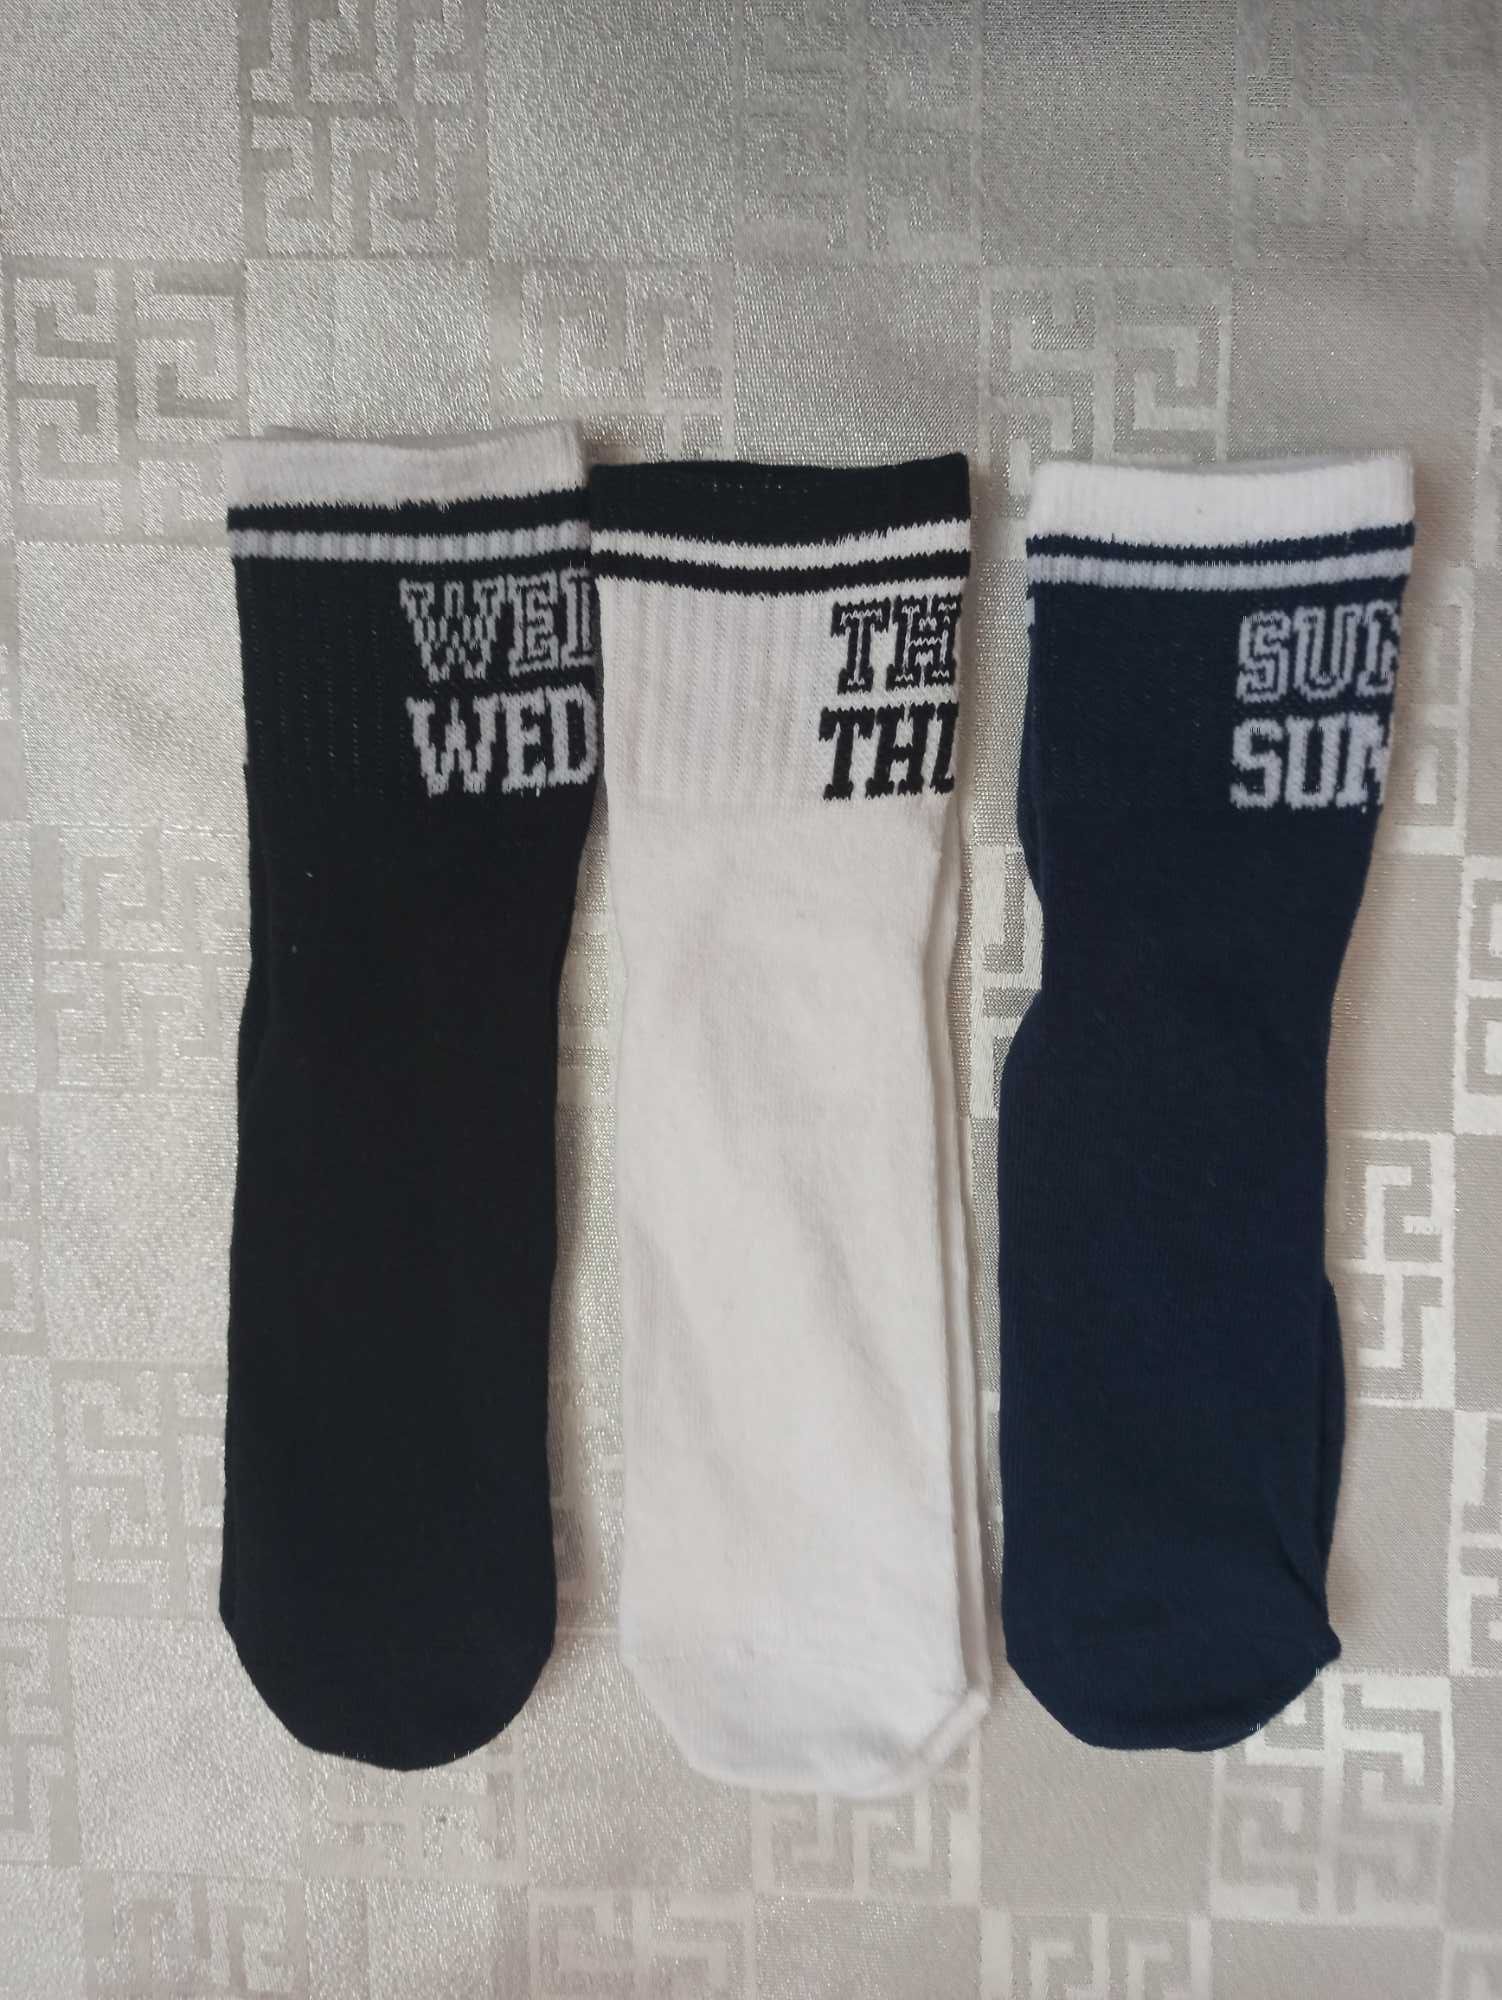 Набір  шкарпеток  " Weekday socks "  39р.  ( 7 пар ) .